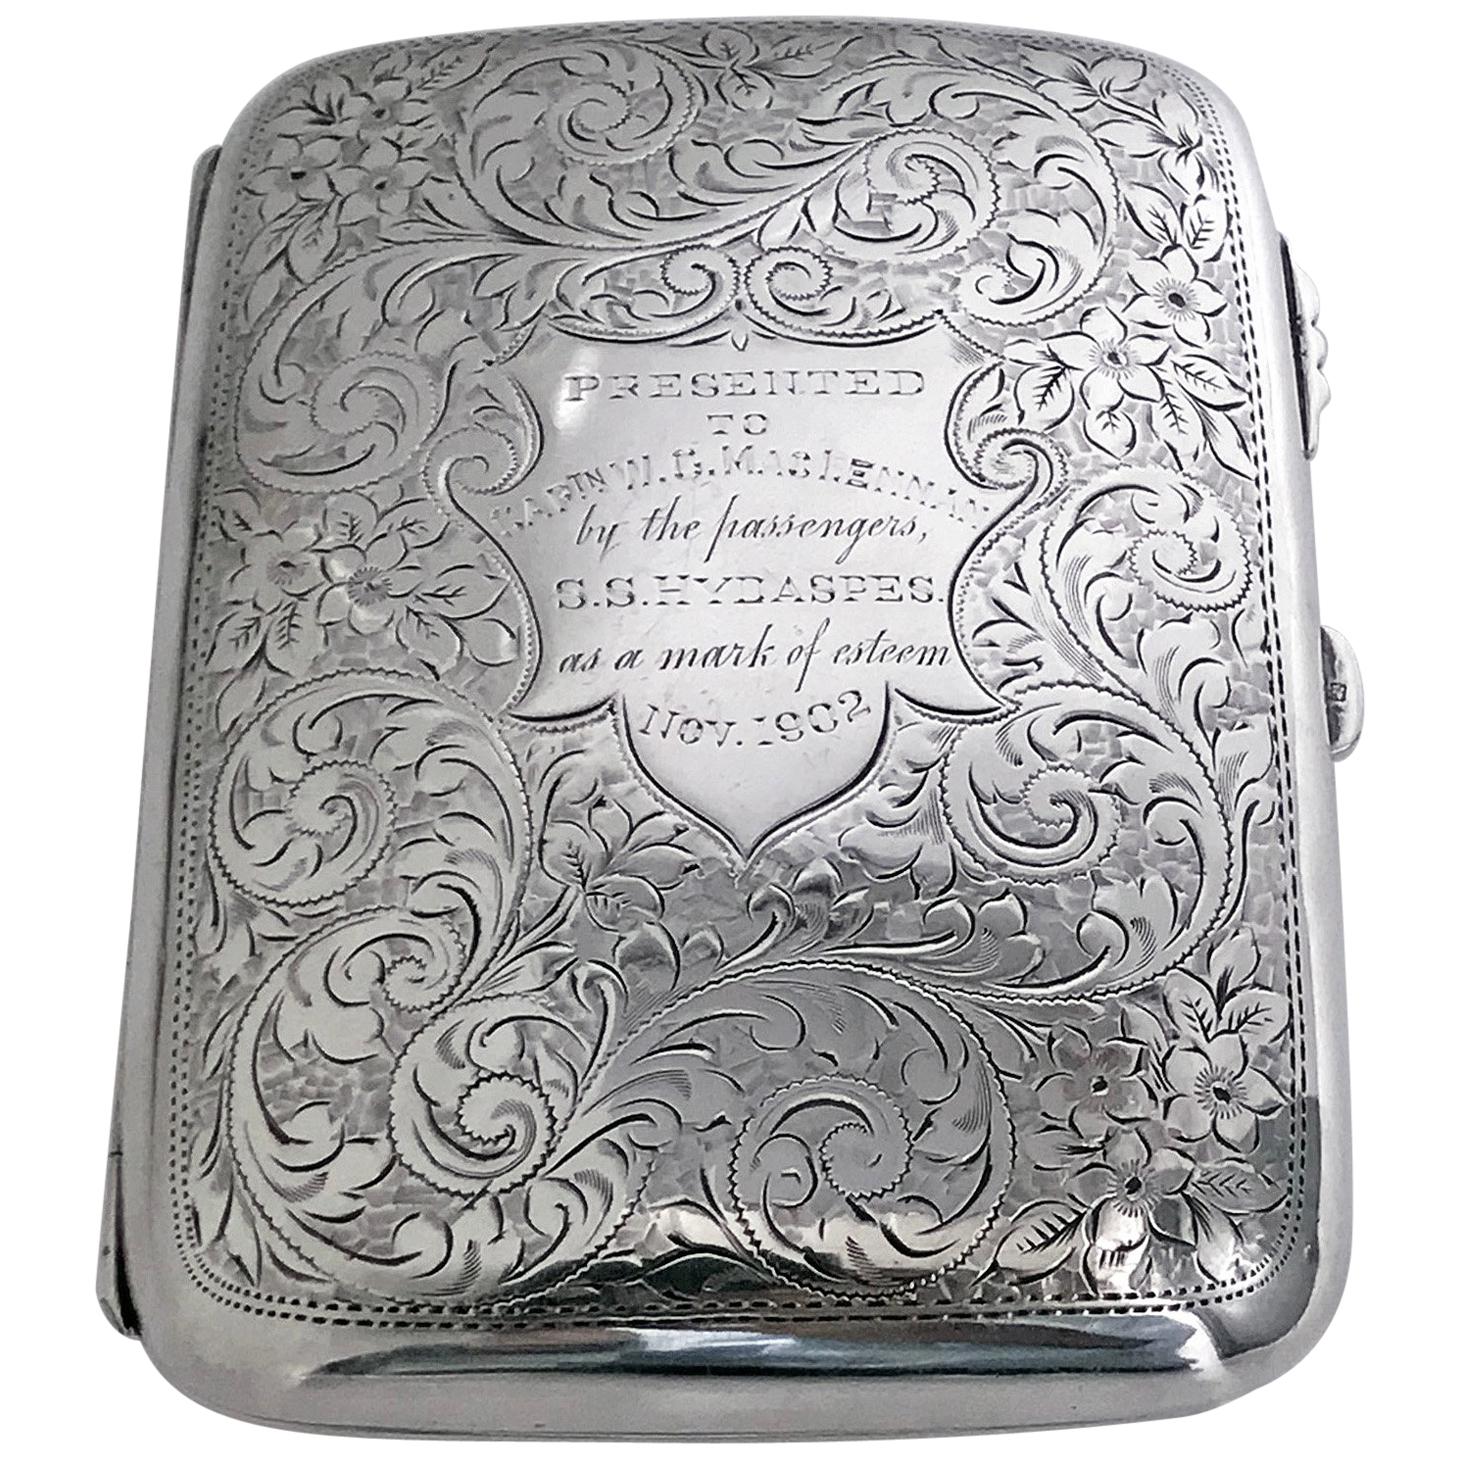 Antique Sterling Silver Cigarette Case Birmingham 1901 Samuel Levi